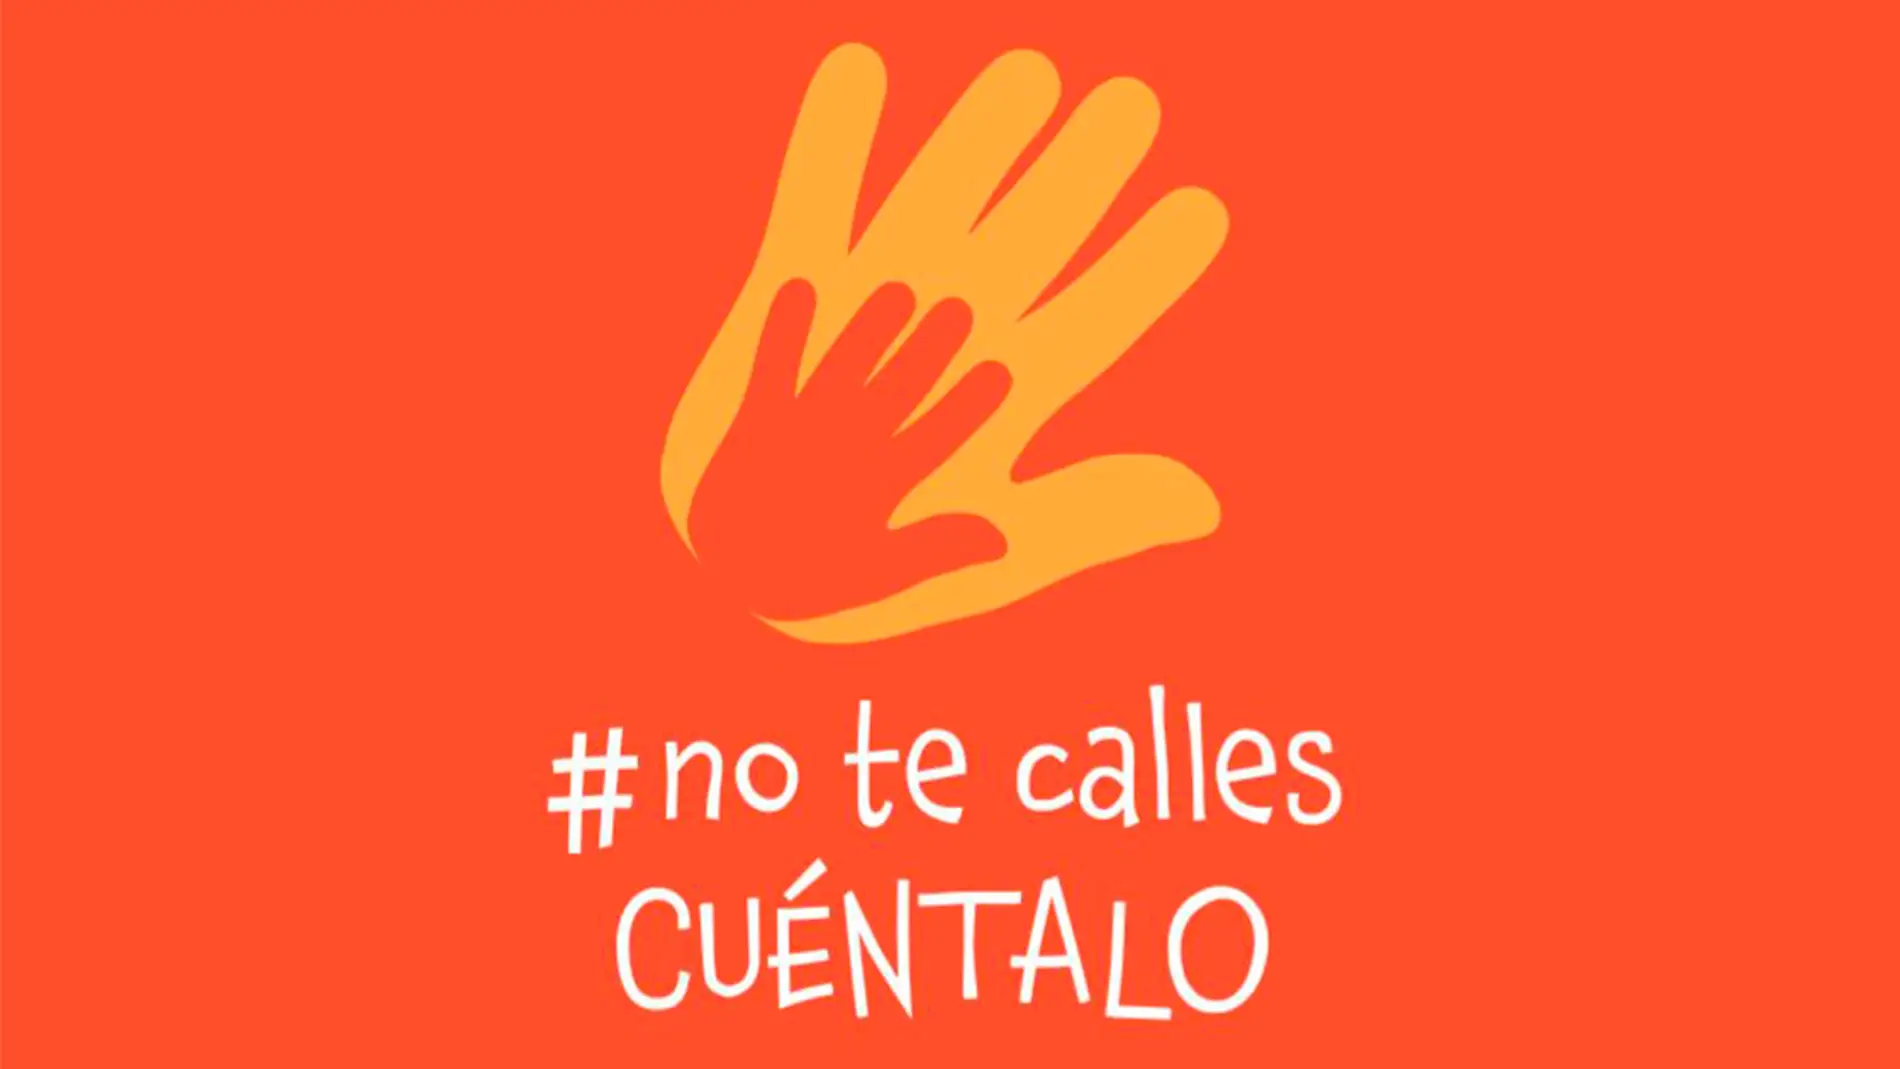 #Notecalles, nueva campaña para concienciar sobre los abusos sexuales a menores